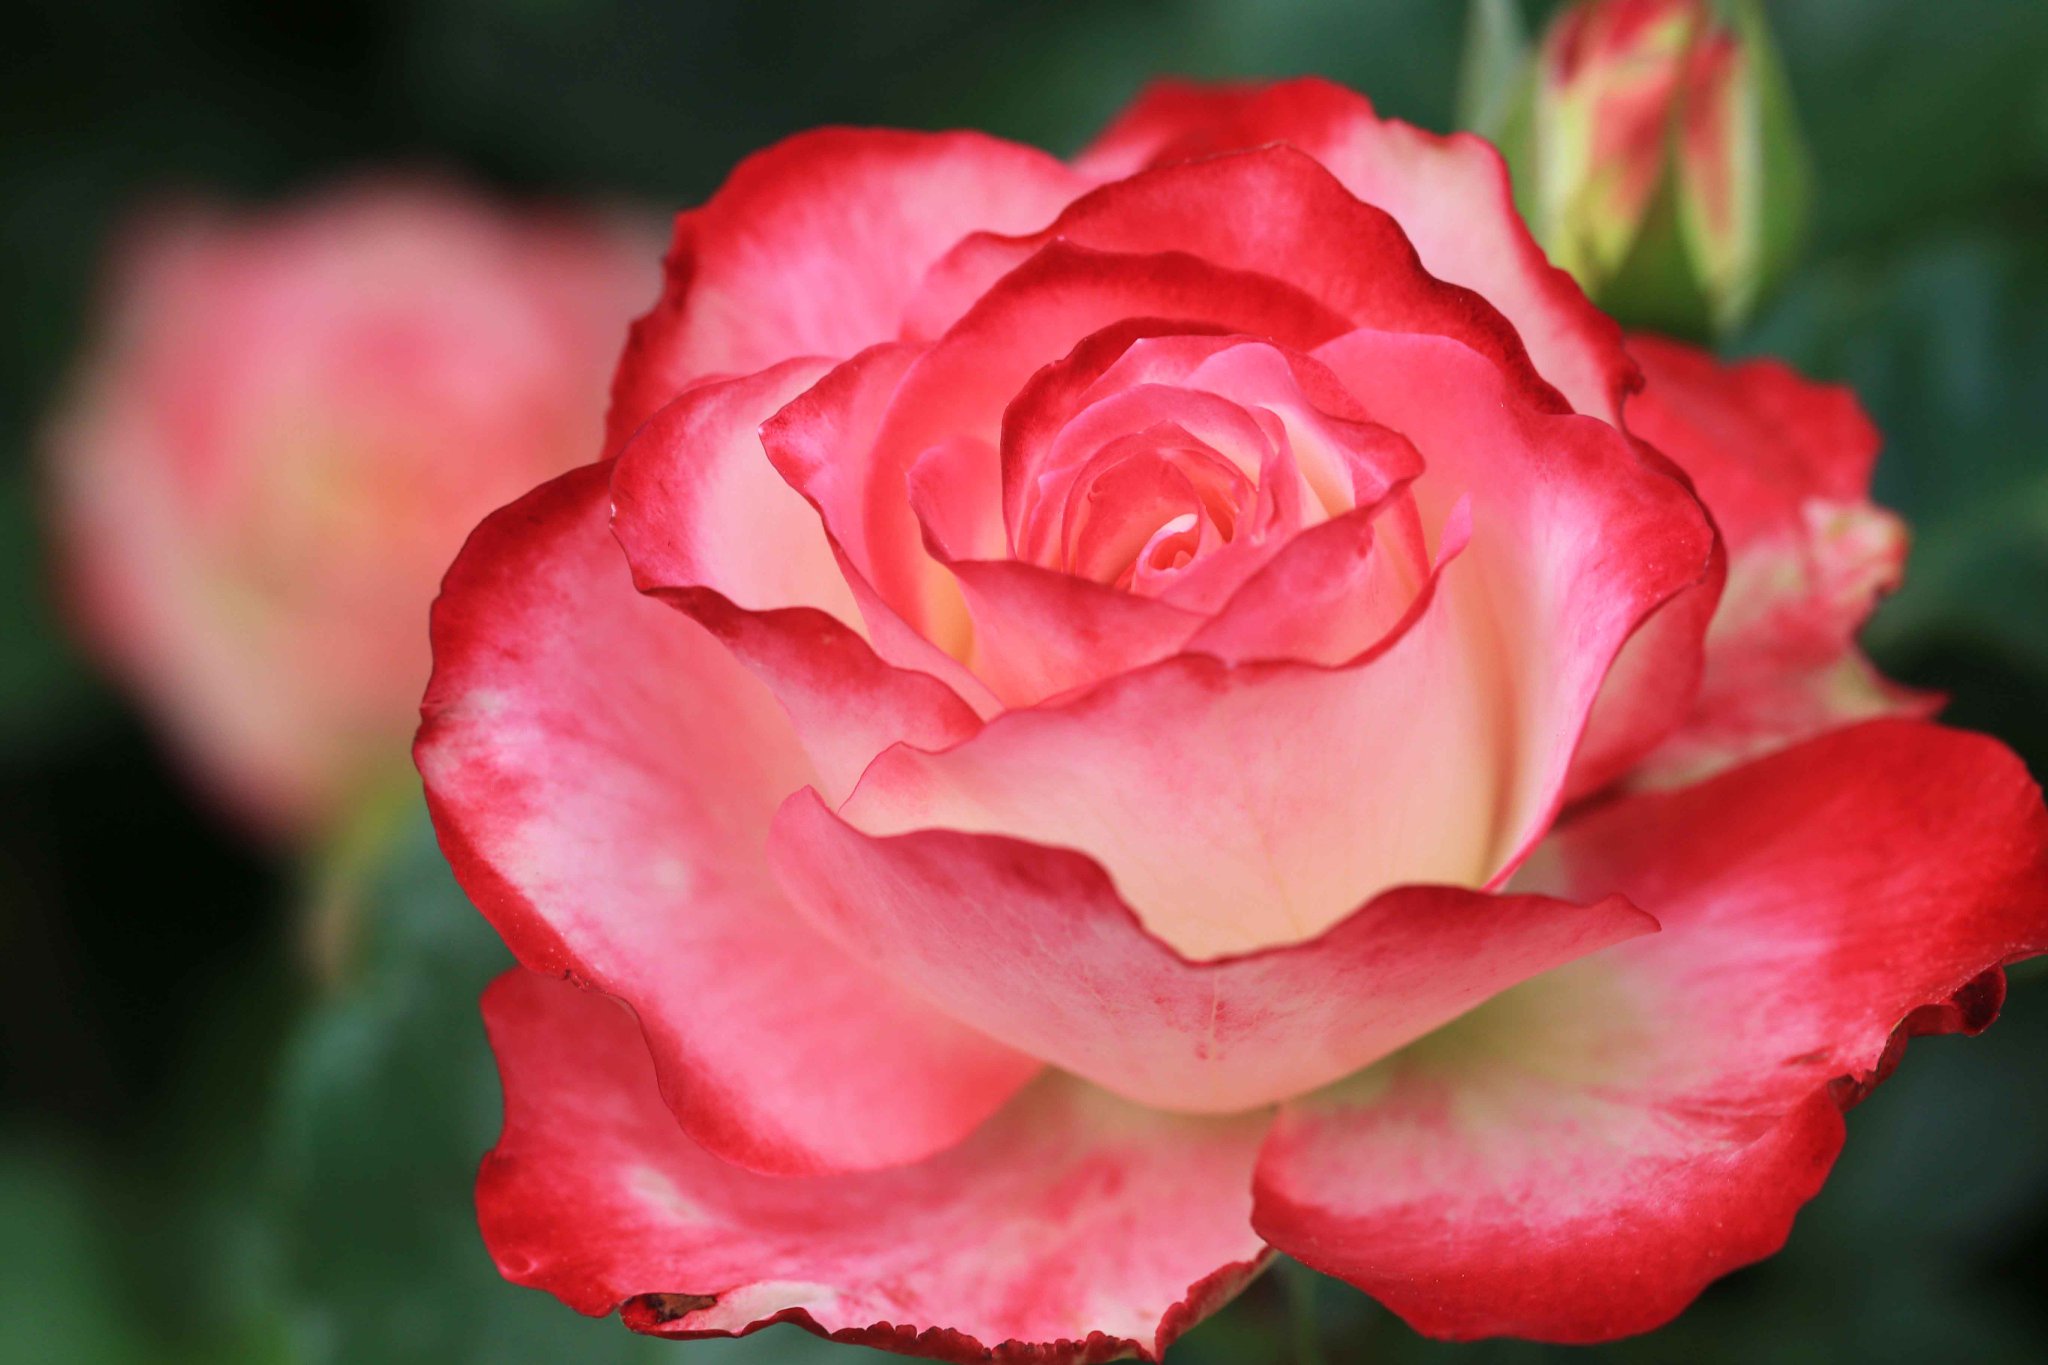 片柳弘史 on Twitter: "花壇に咲いた美しい薔薇の花。モナコ公妃となった女優のグレース・ケリーに捧げられた薔薇「プリンセス・ド